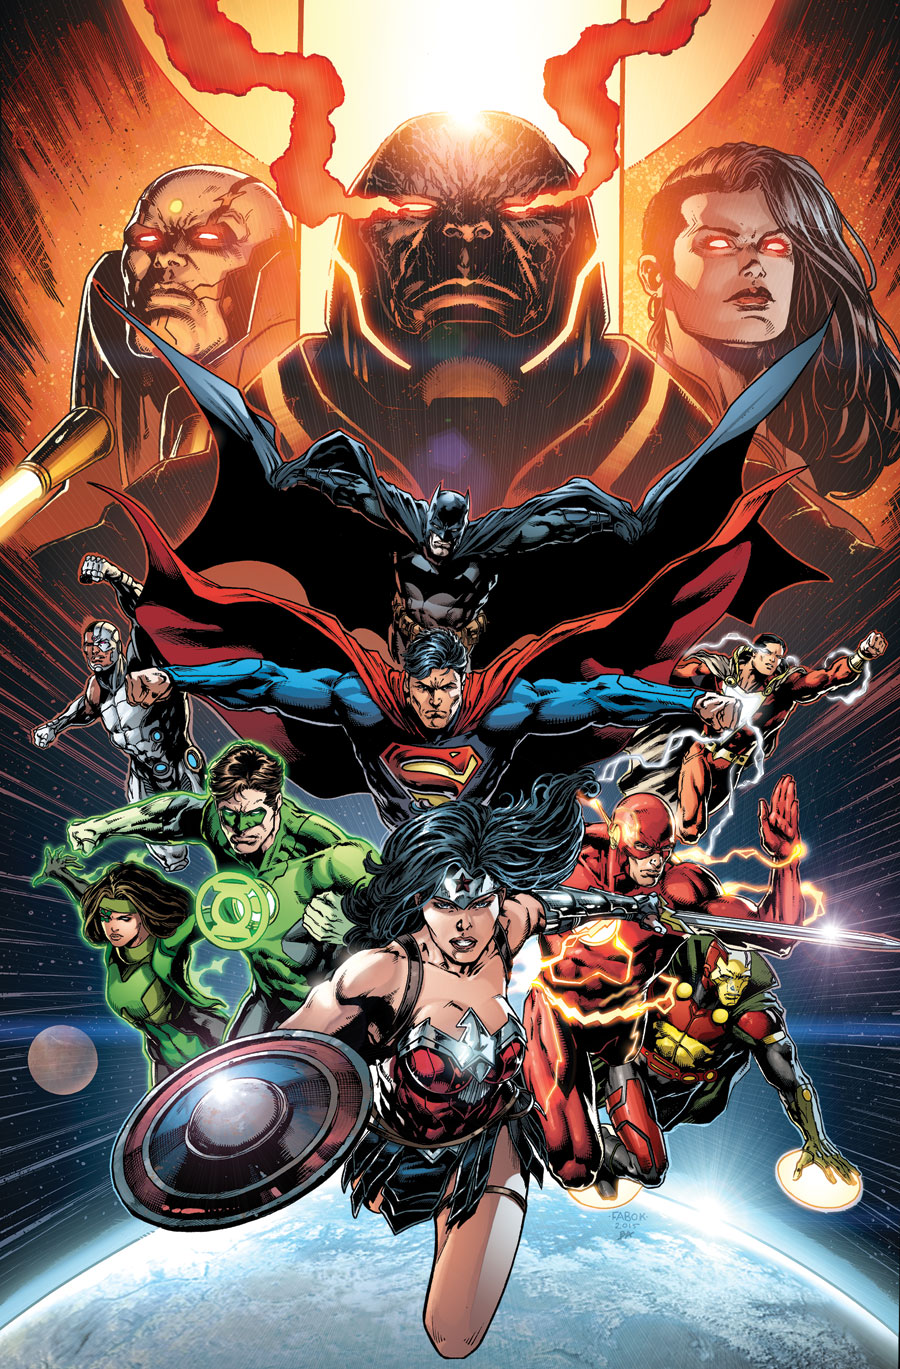 Justice League #50